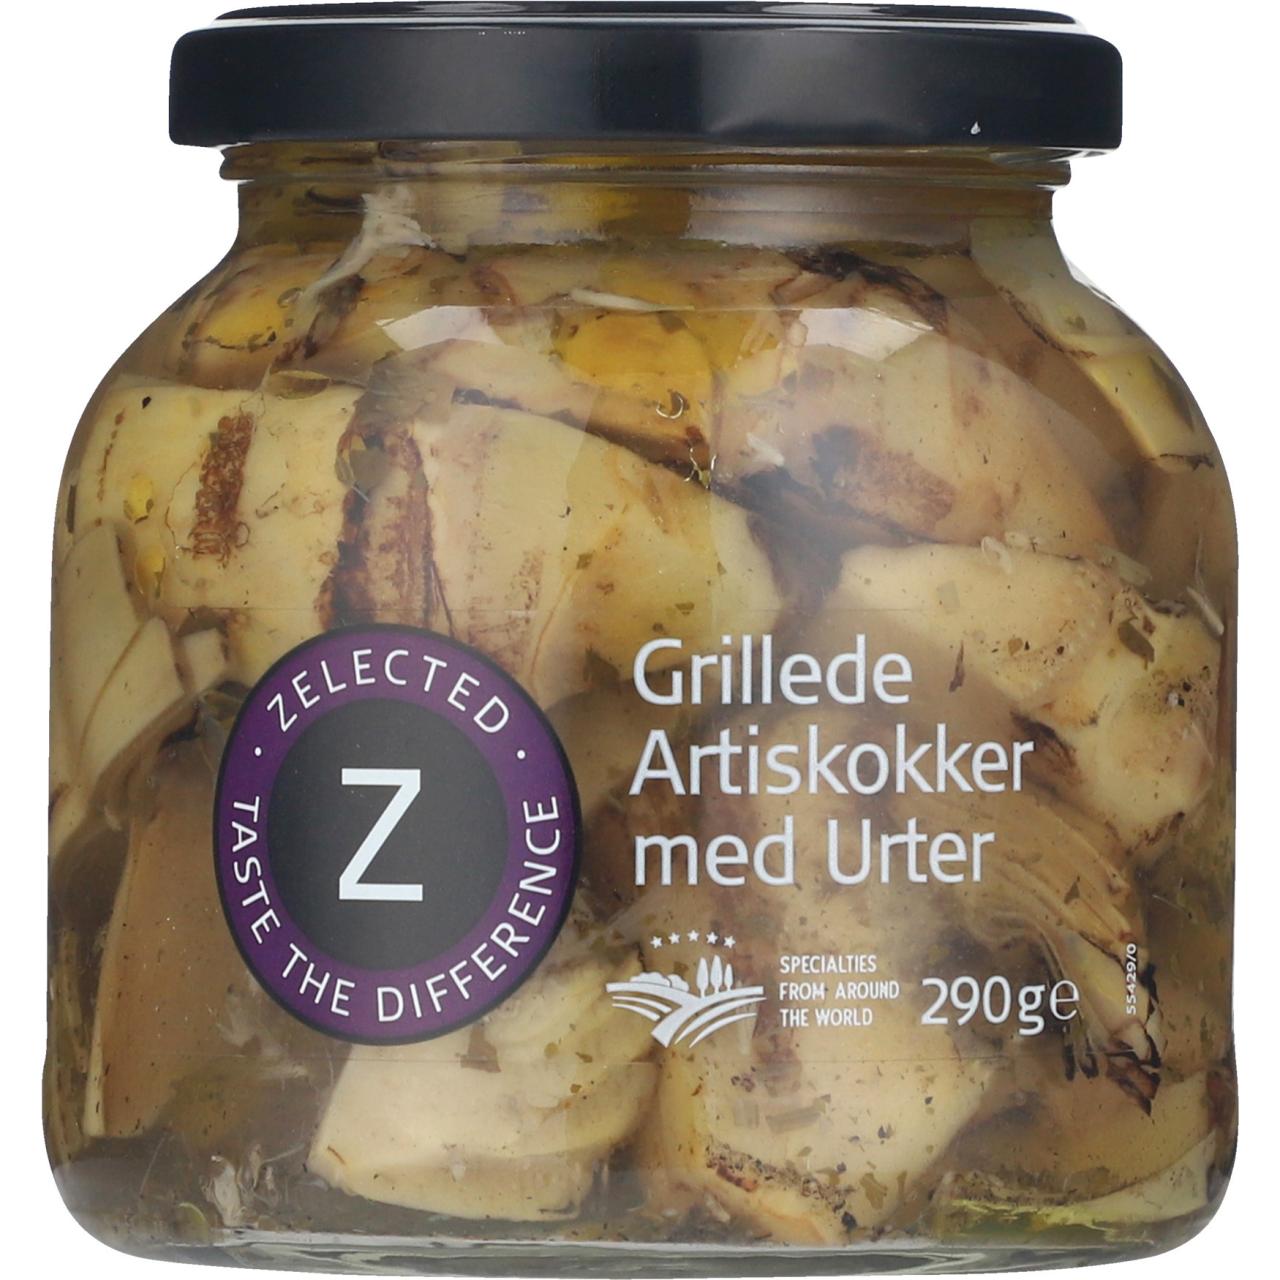 Zelected Grillede Artiskokker med Urter/Gegrillte Artischocken 290g